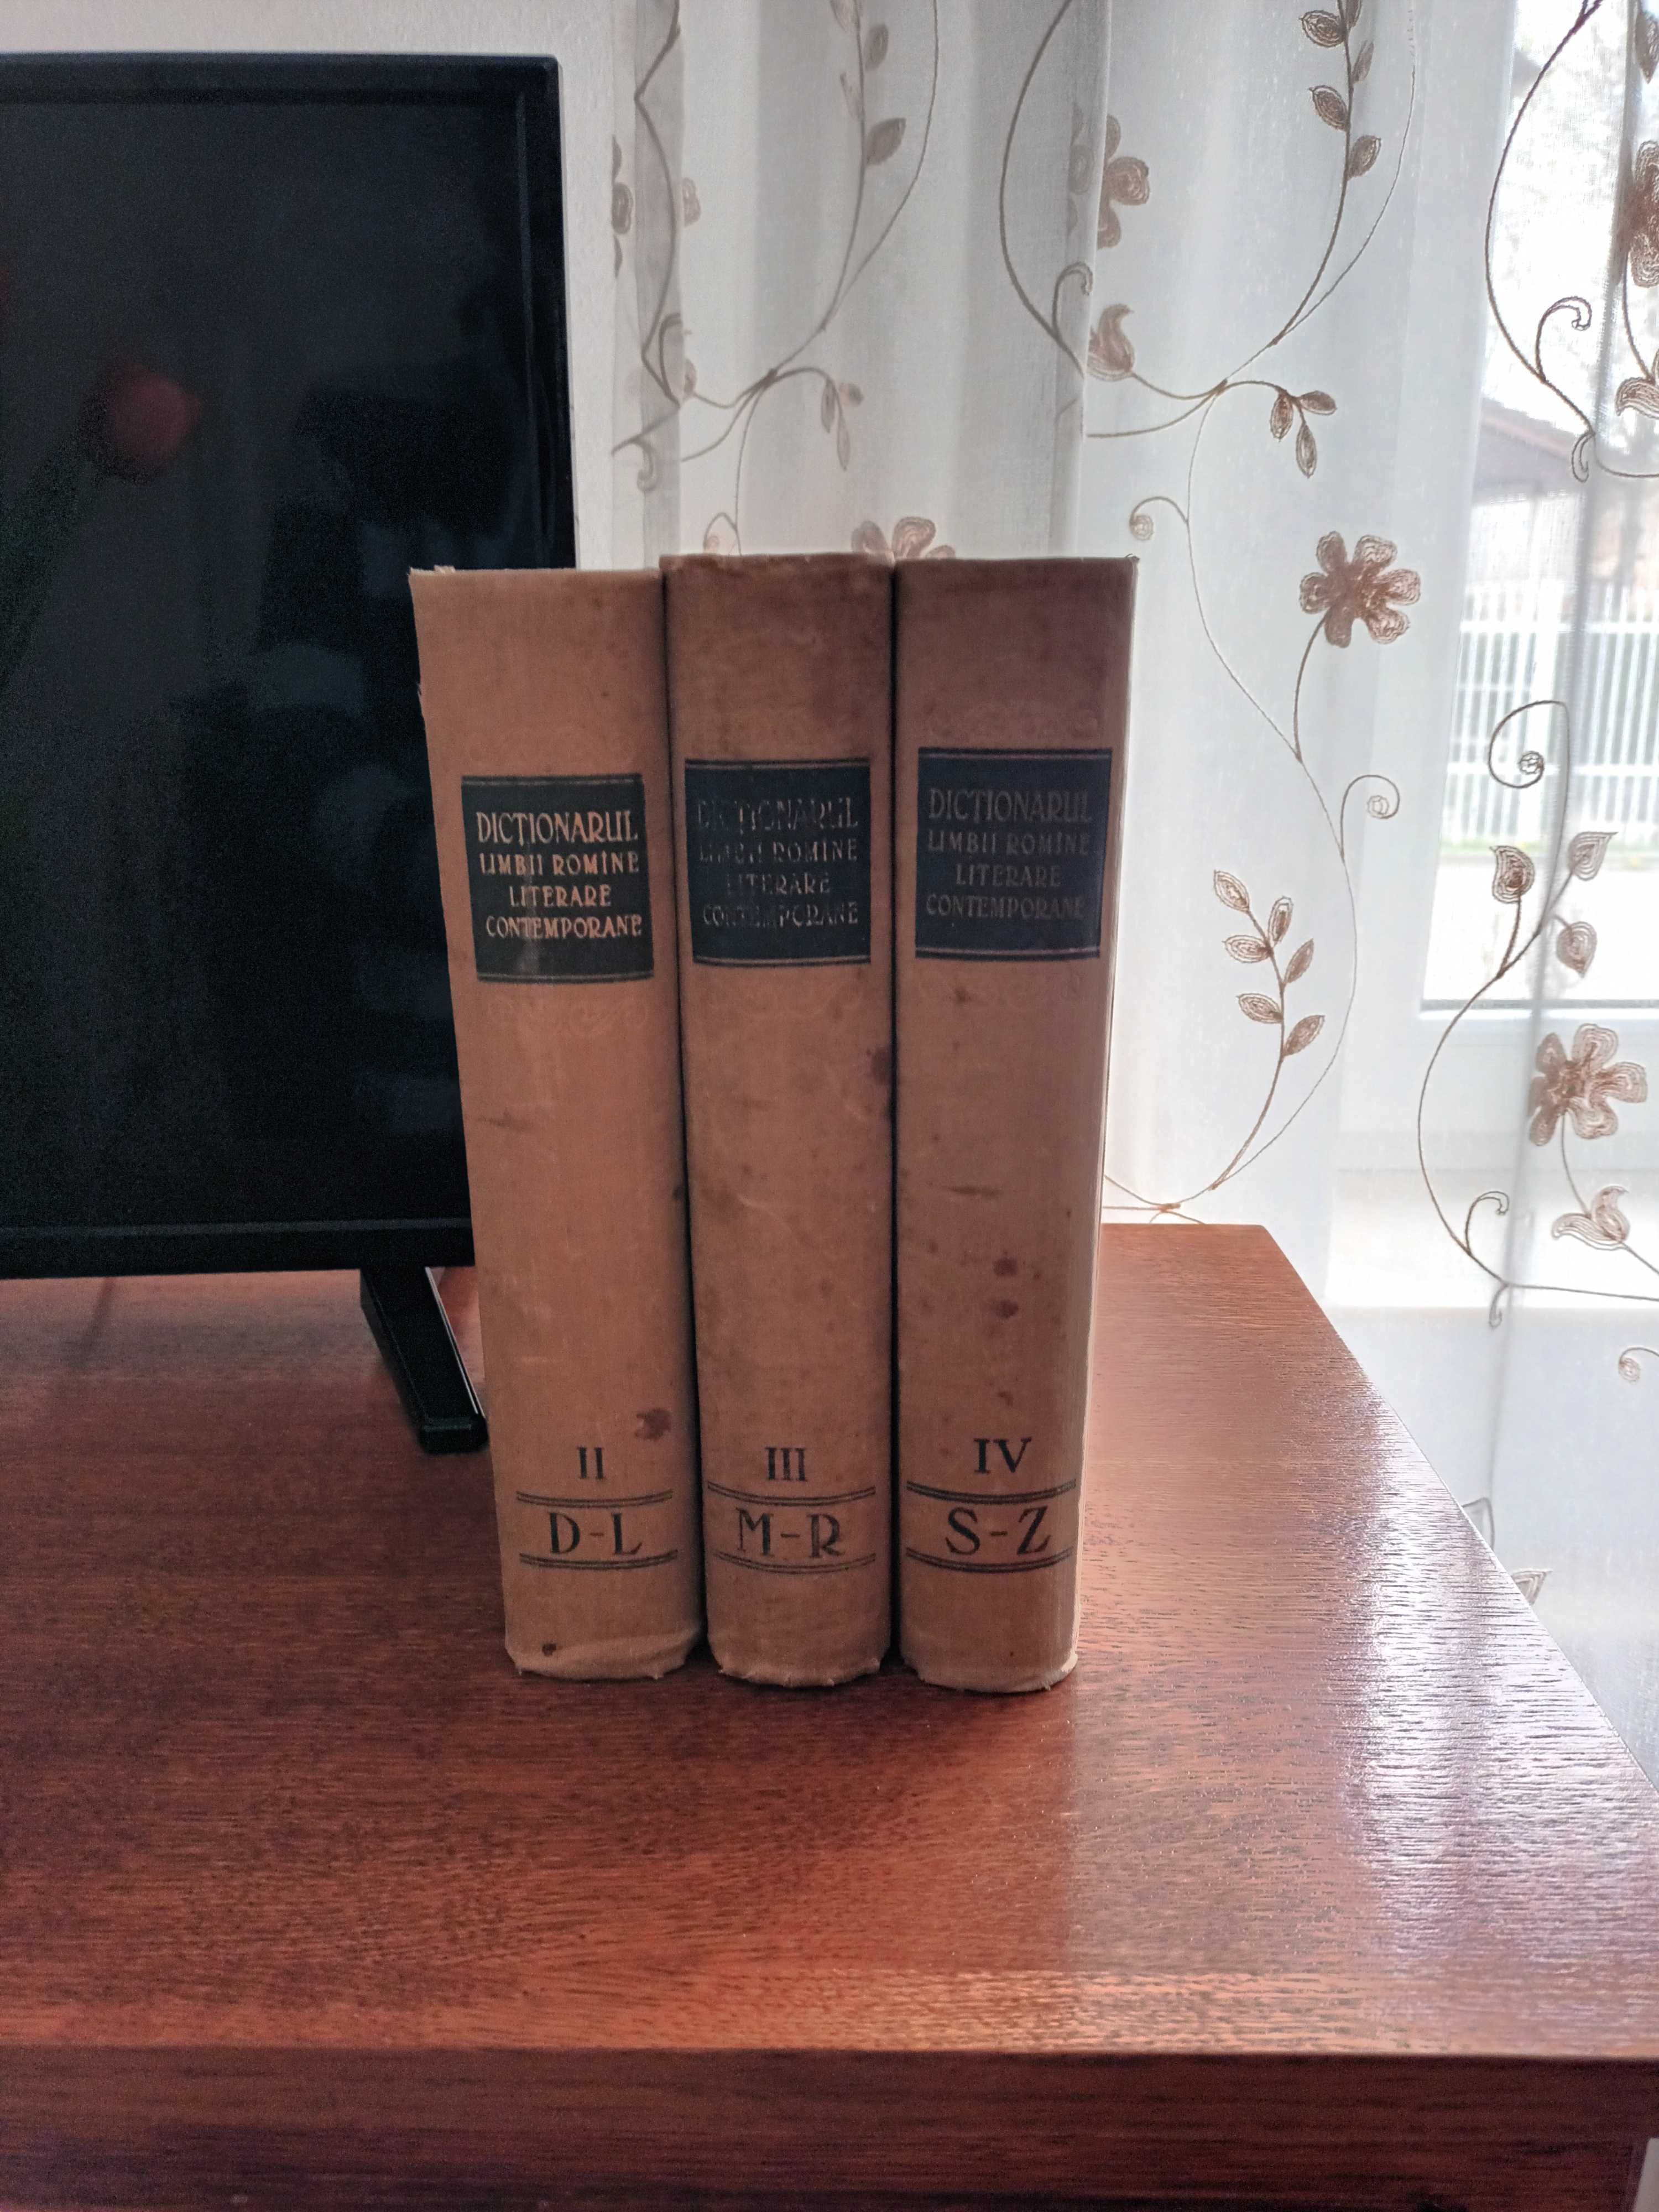 dictionarul limbii romane literare contemporane - 3 volume